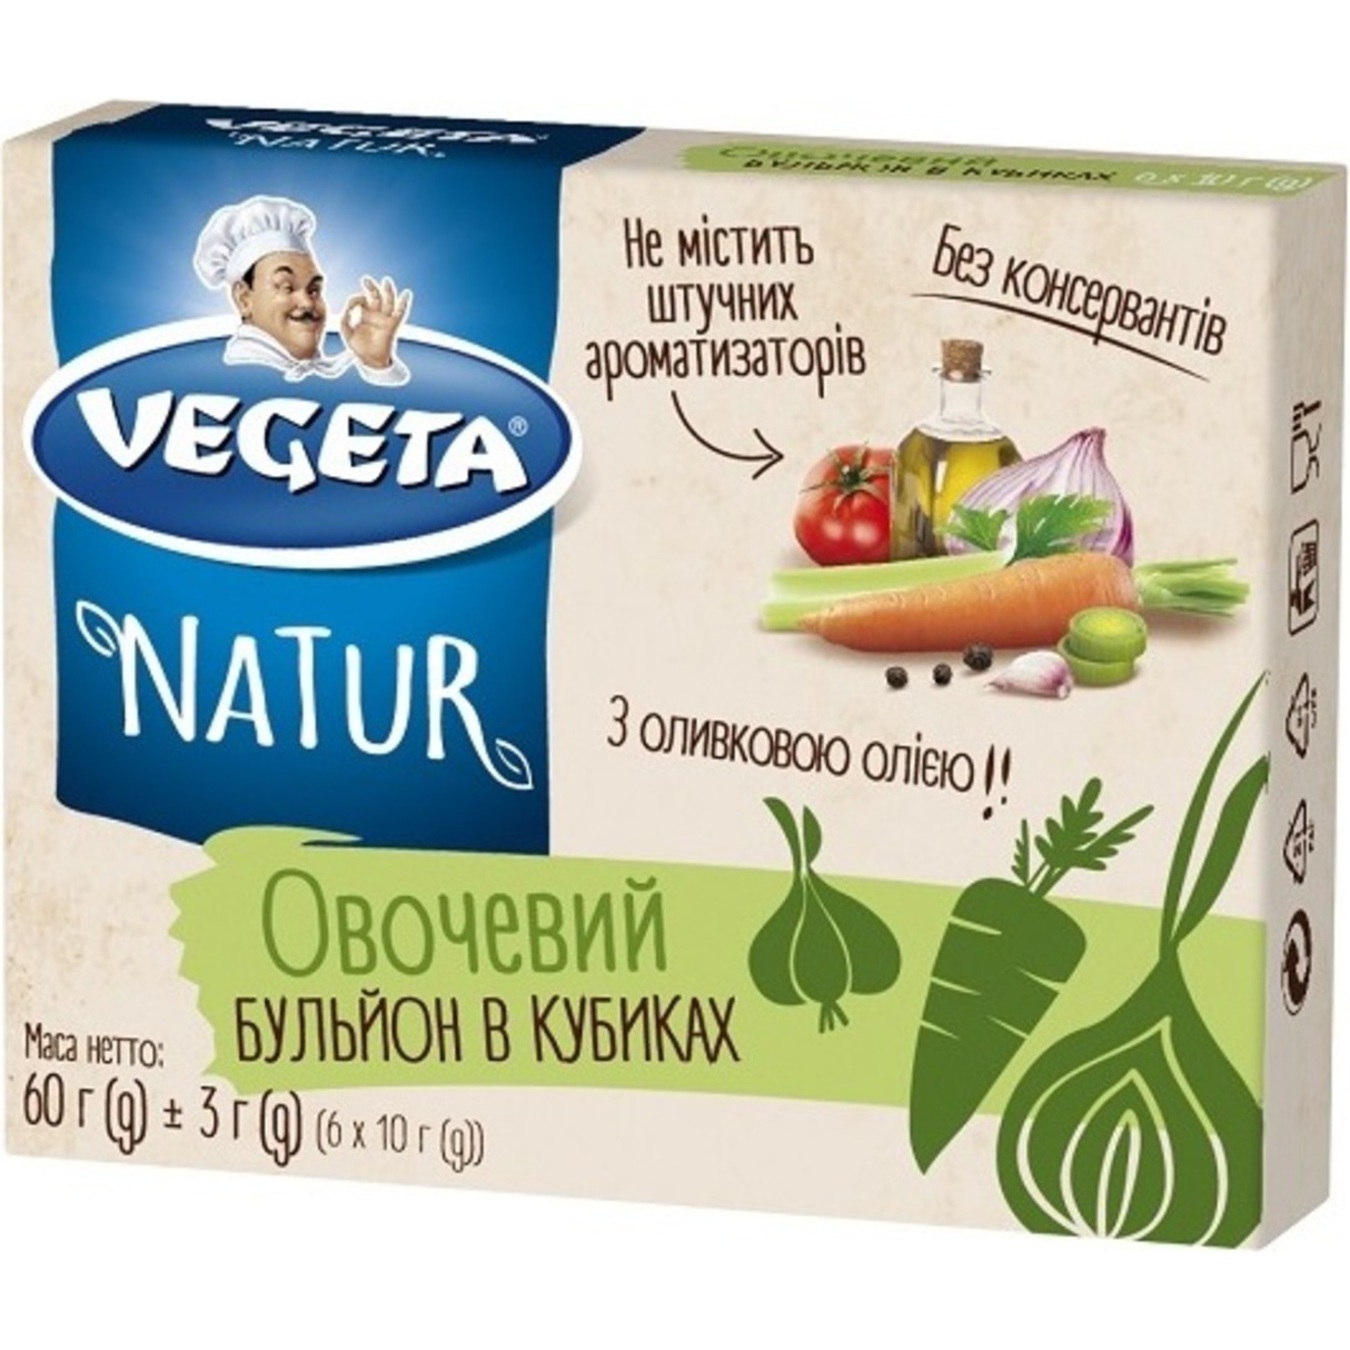 Бульон Vegeta Natur в кубиках овощной 60г